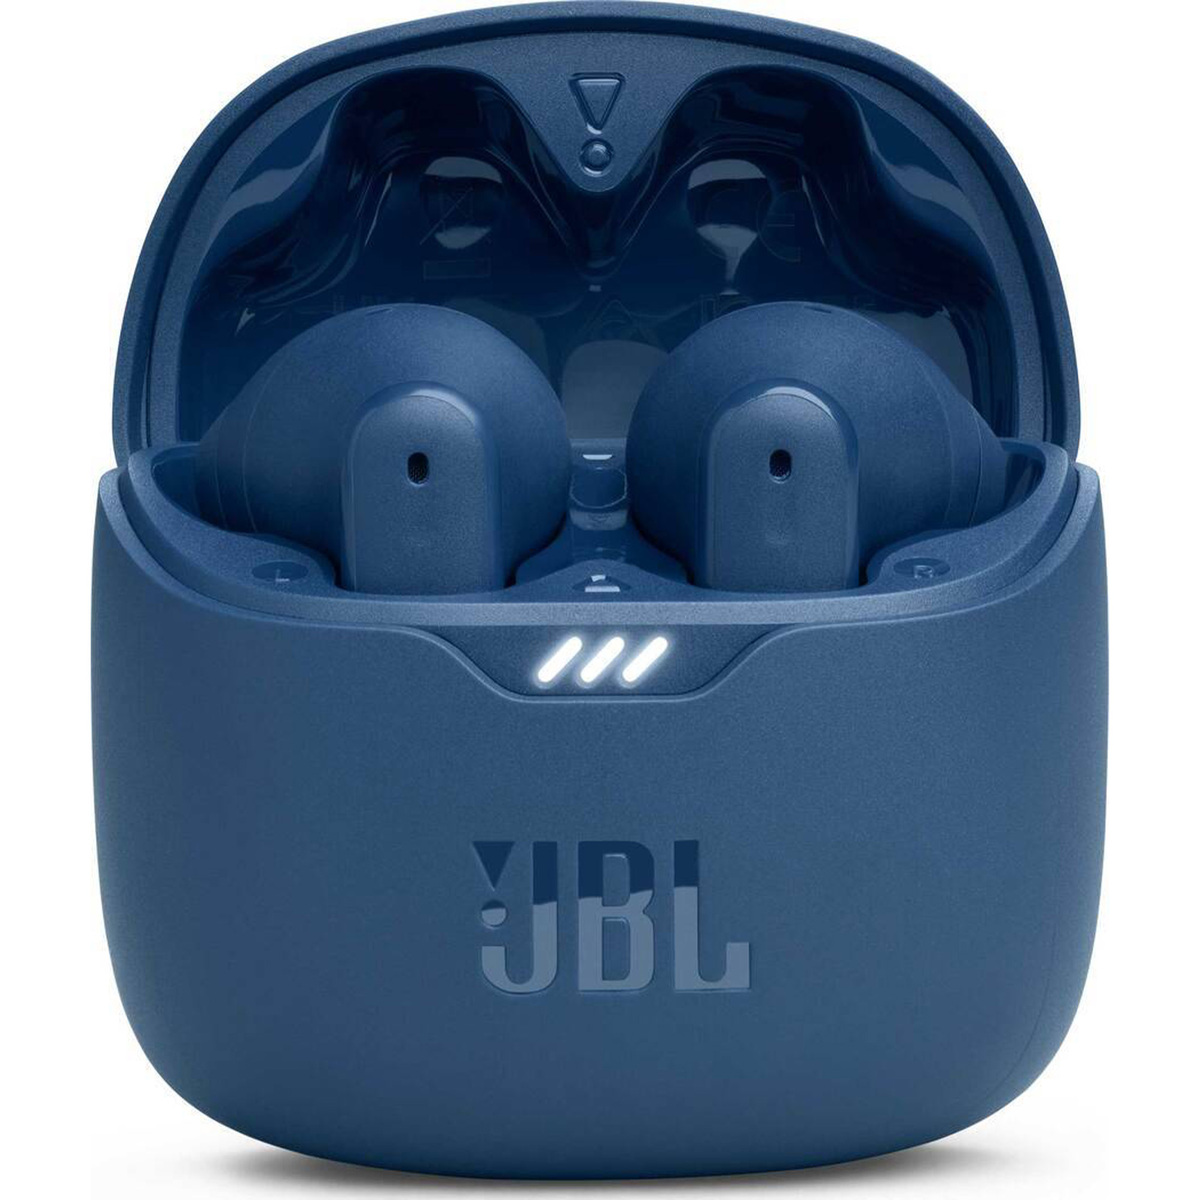 جي بي إل تيون فليكس سماعات أذن لاسلكية بخاصية إلغاء الضوضاء ، 4 ميكروفونات ، أزرق